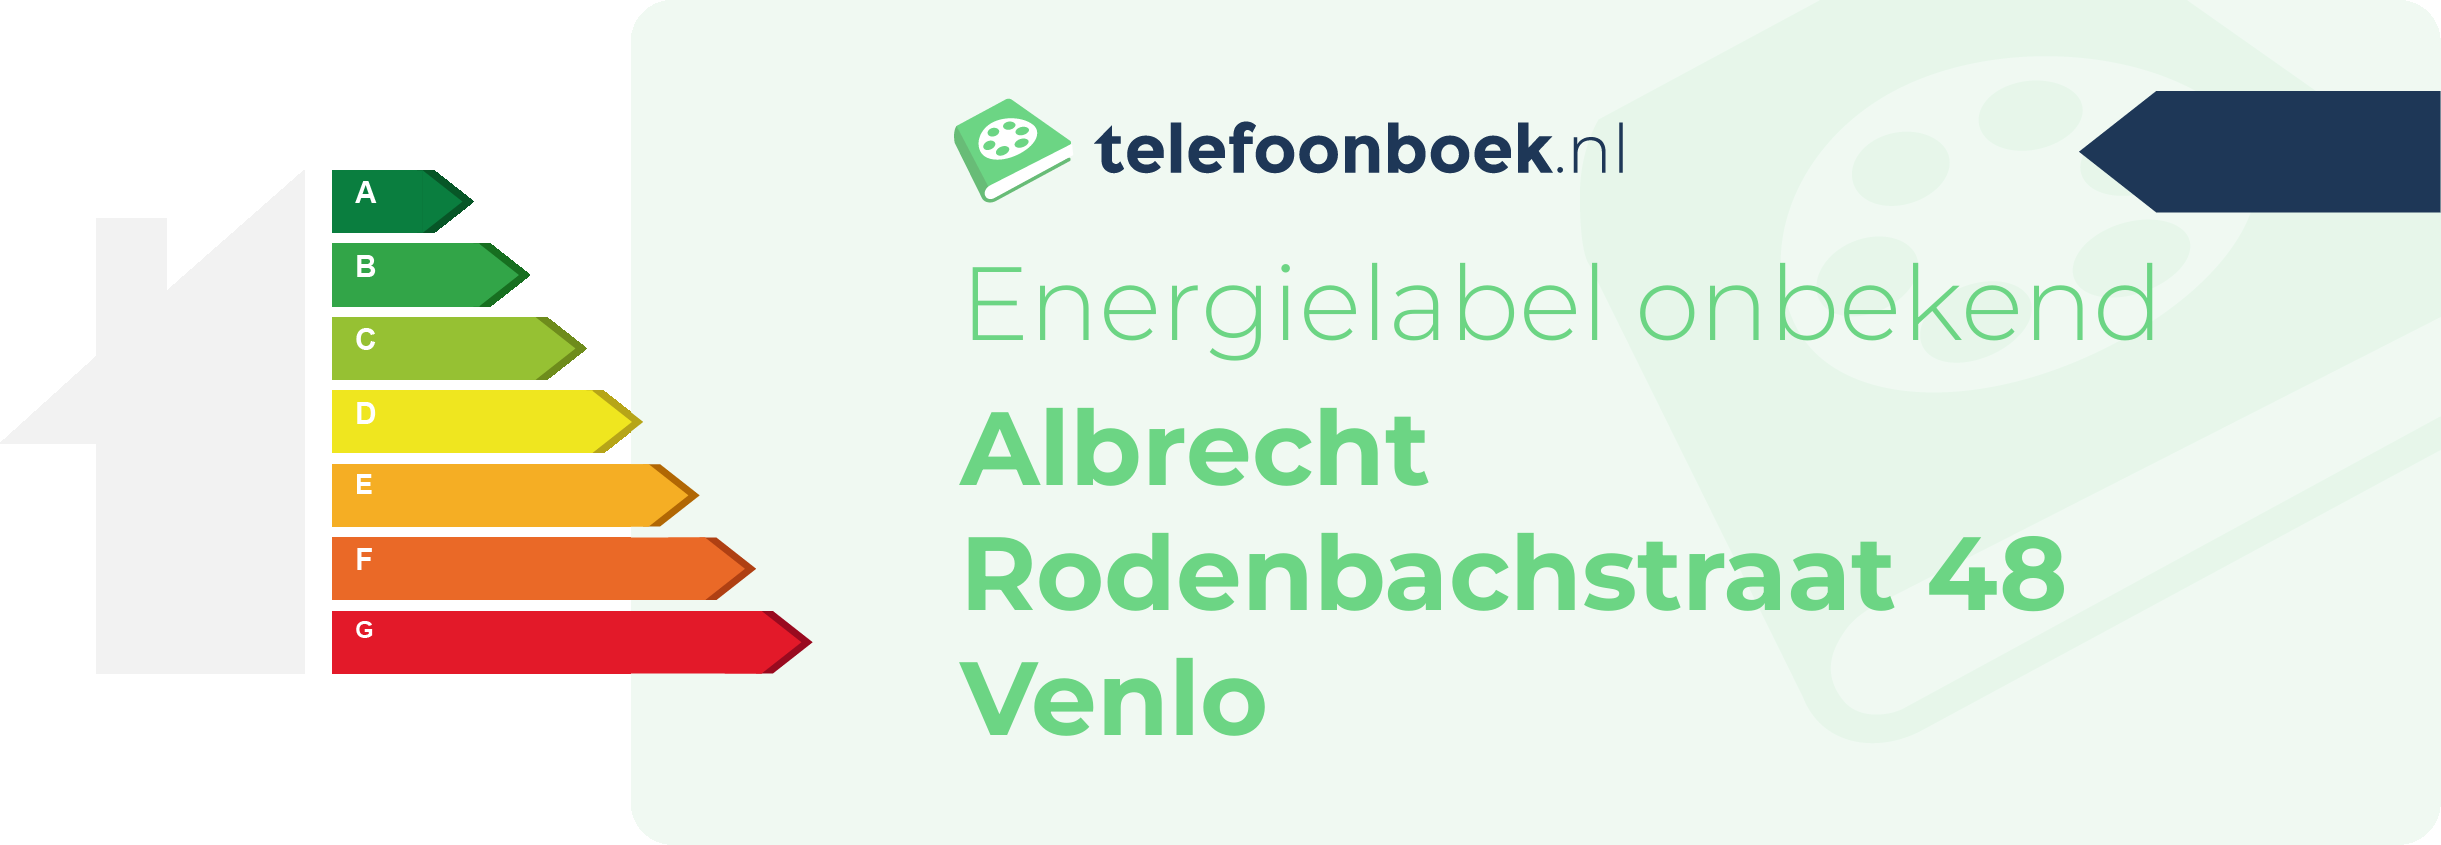 Energielabel Albrecht Rodenbachstraat 48 Venlo